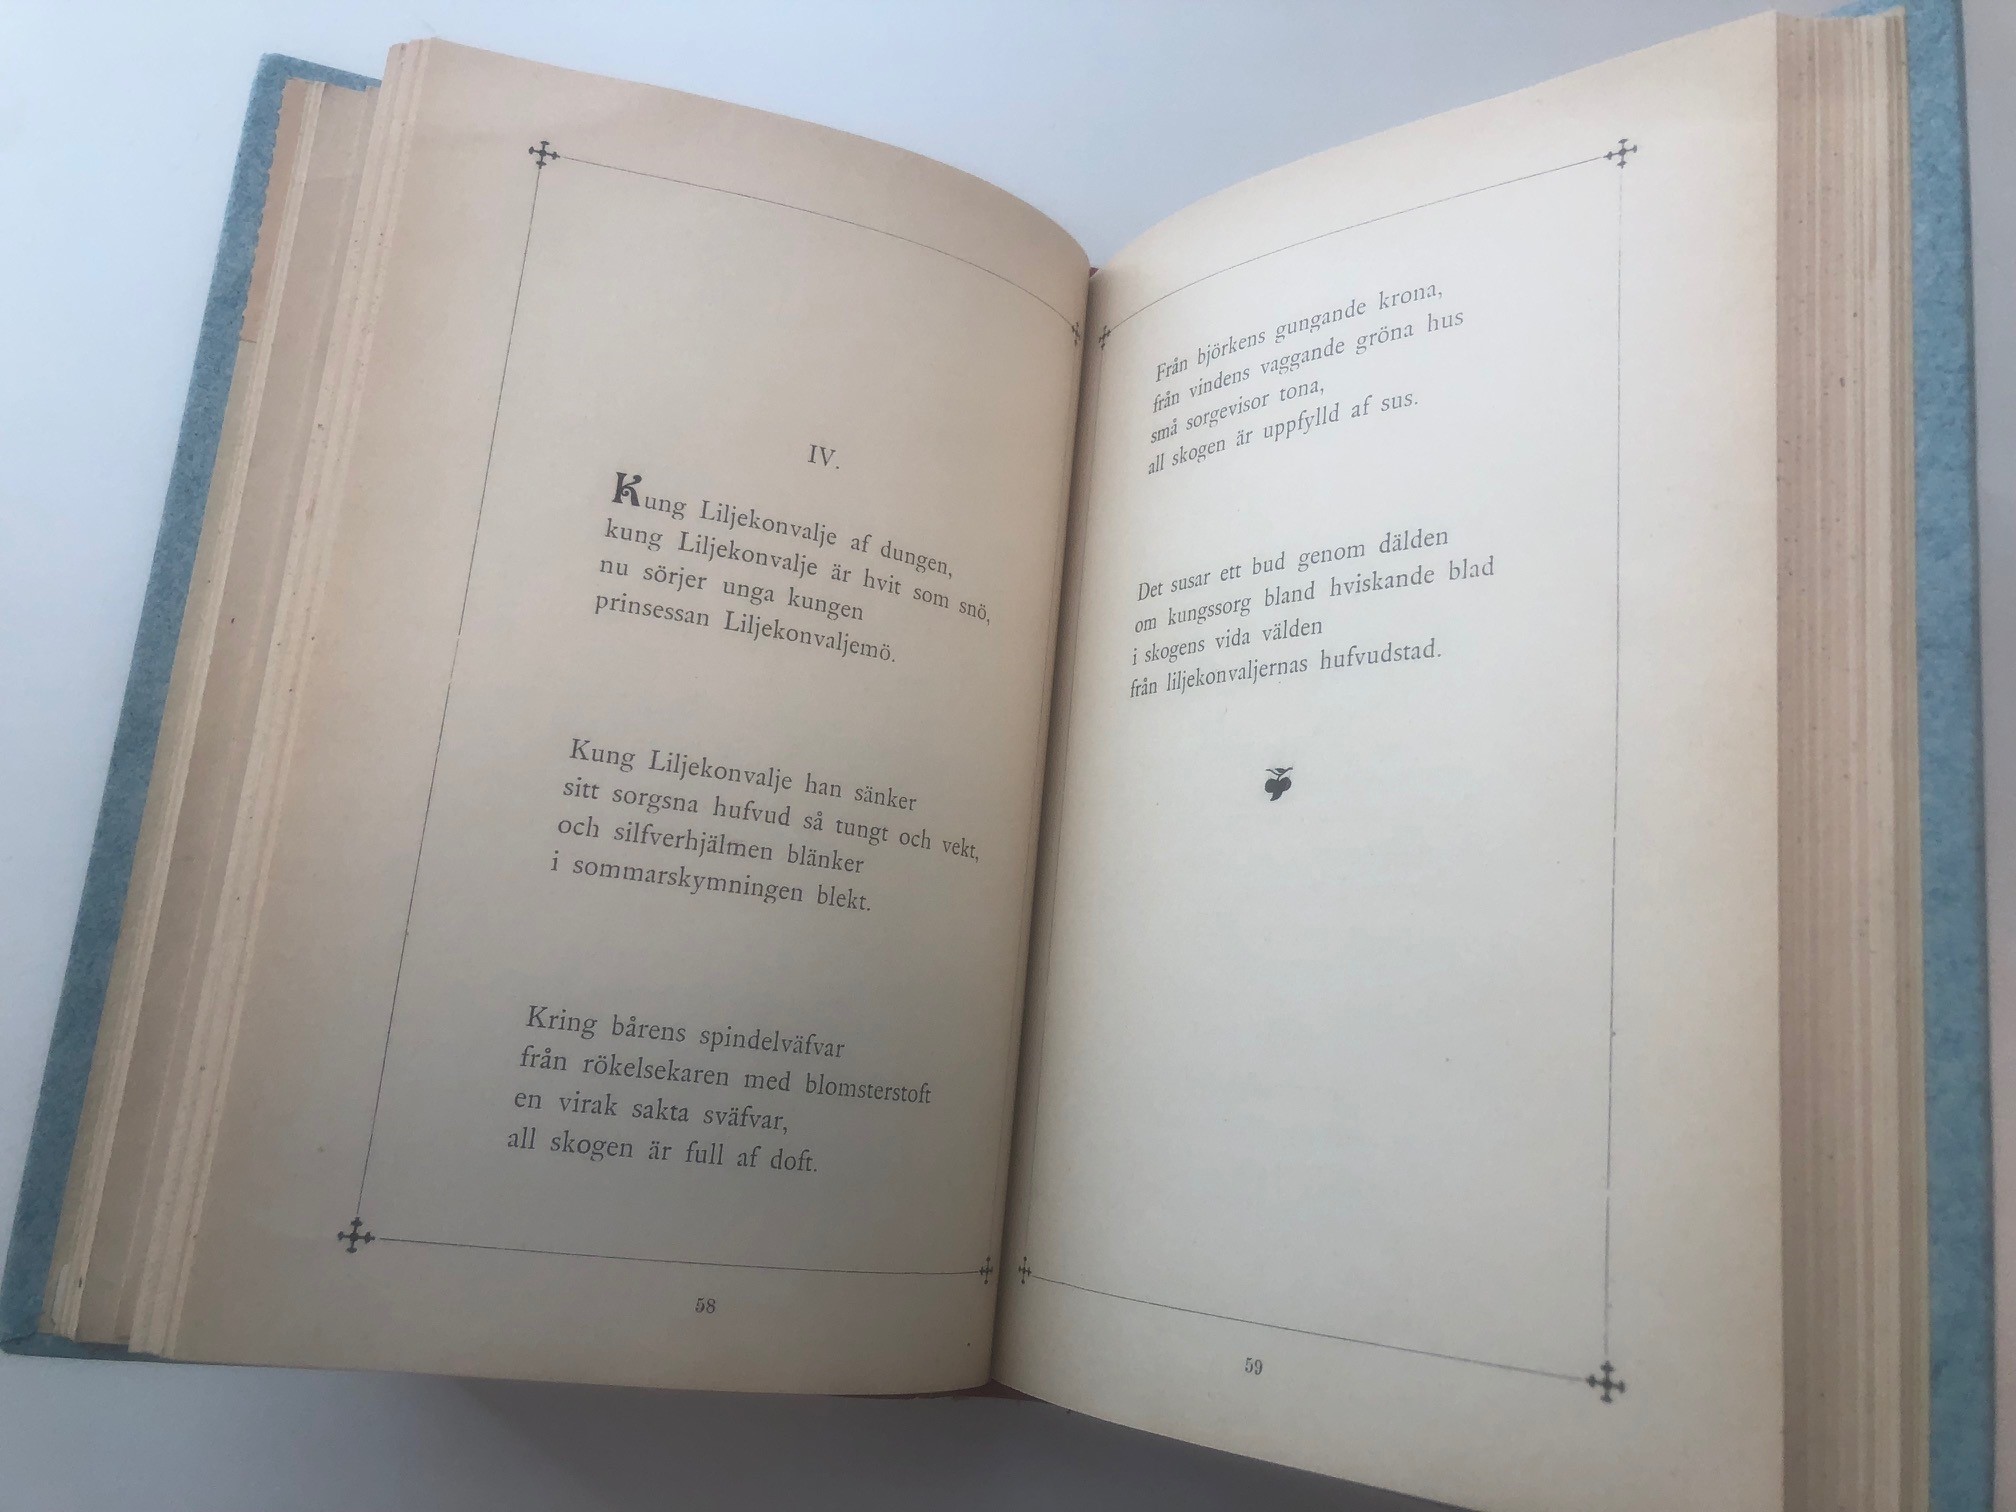 Uppslag på dikten Kung liljekonvalje av dungen ur Stänk och flikar 1896